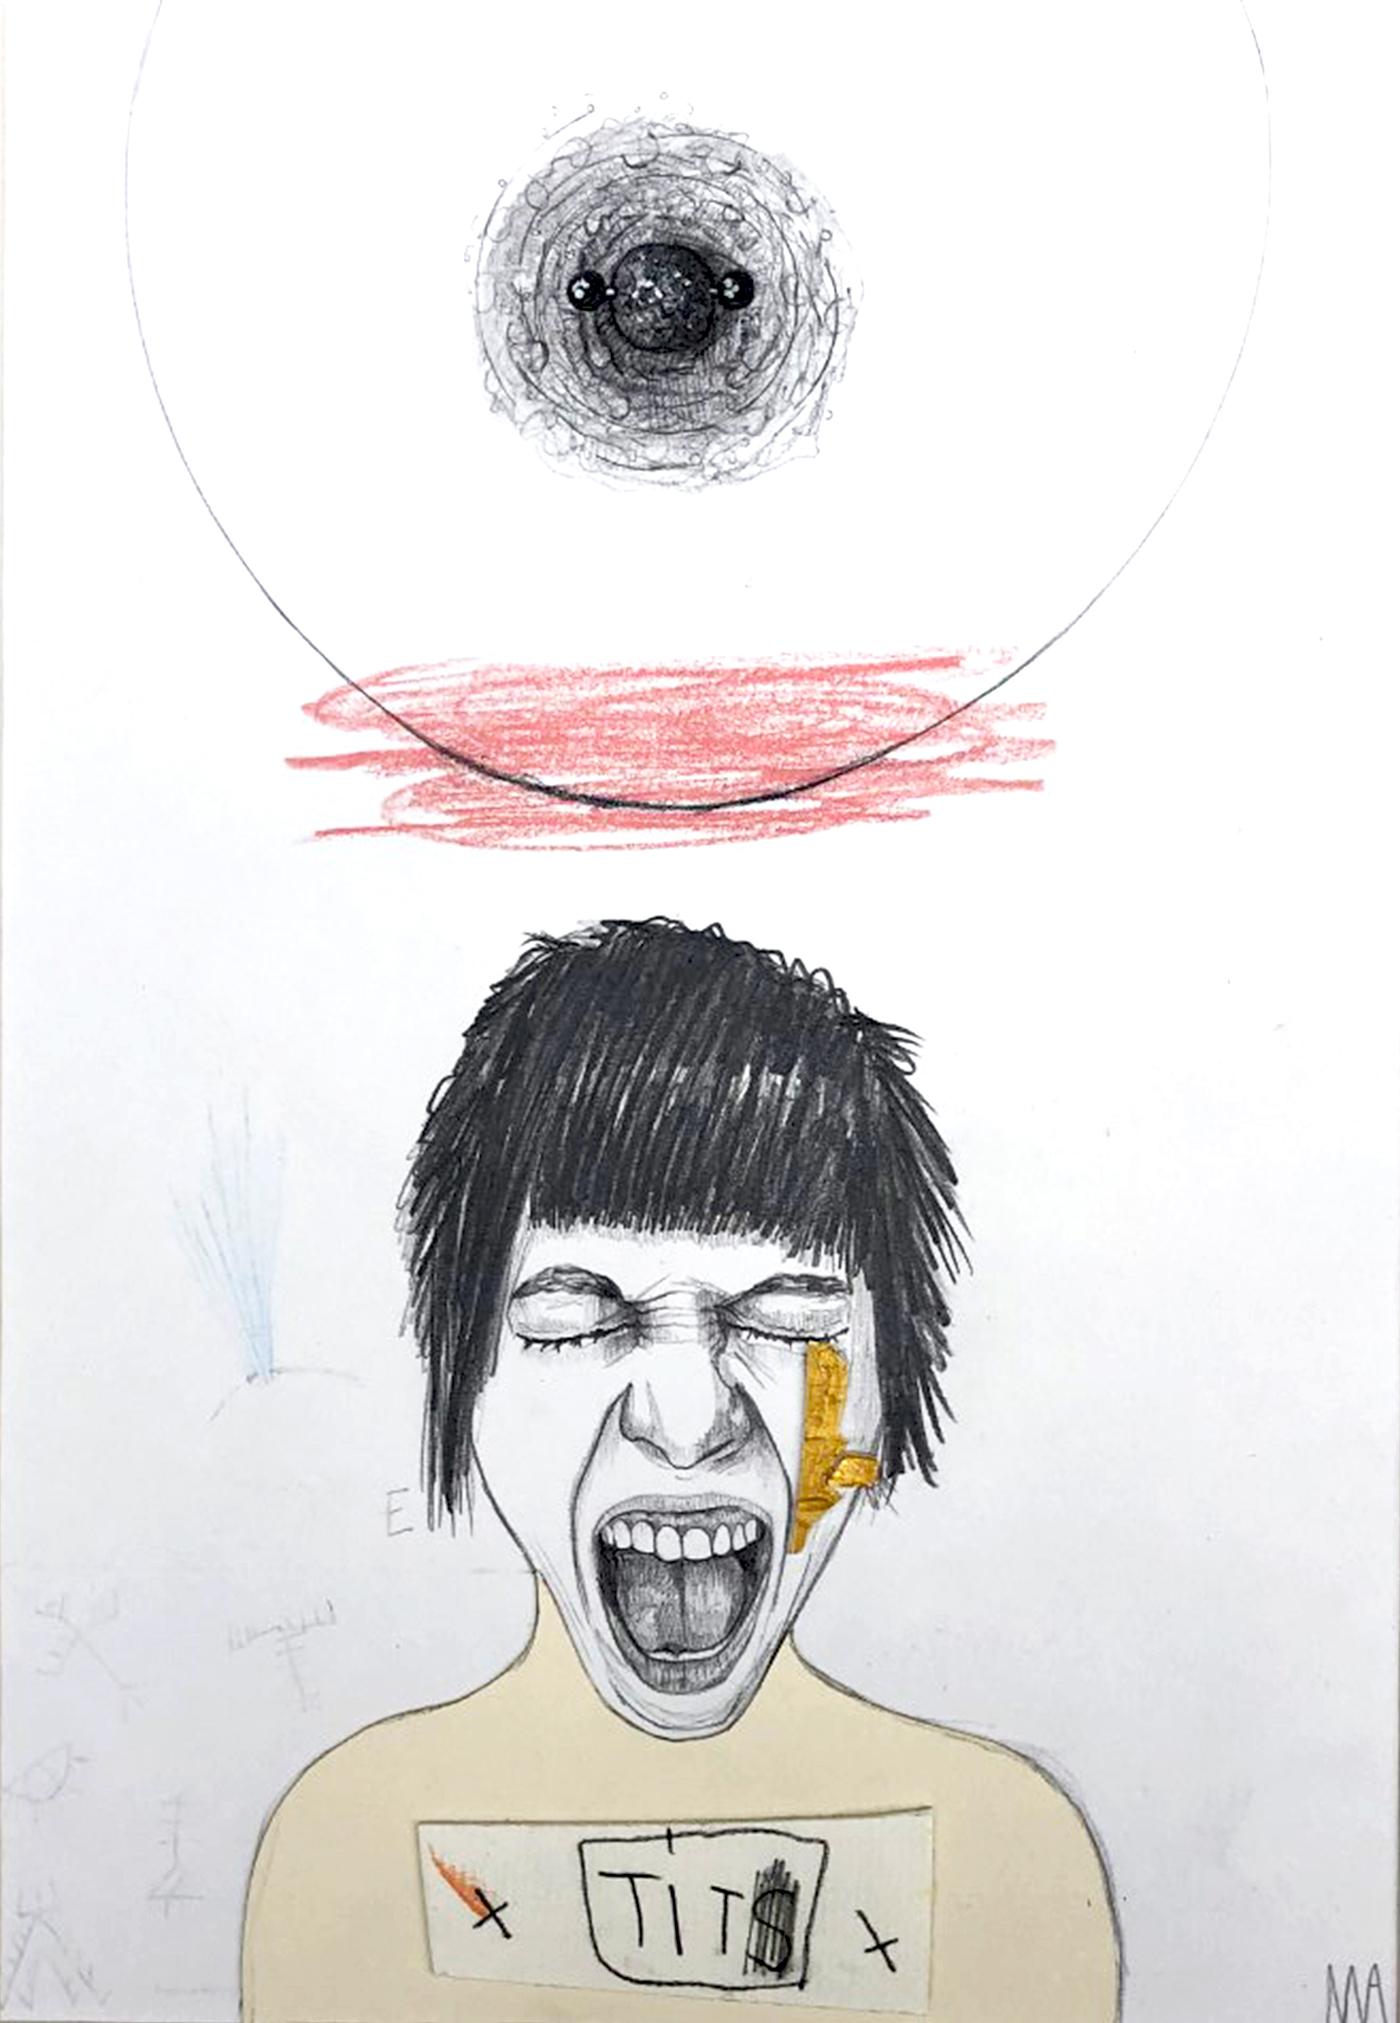 TIT
2017
Graphite, Couleurs et collage sur papier
SIgné au recto par l'artiste
29.7 x 21 cm
Prix de vente : 490 €